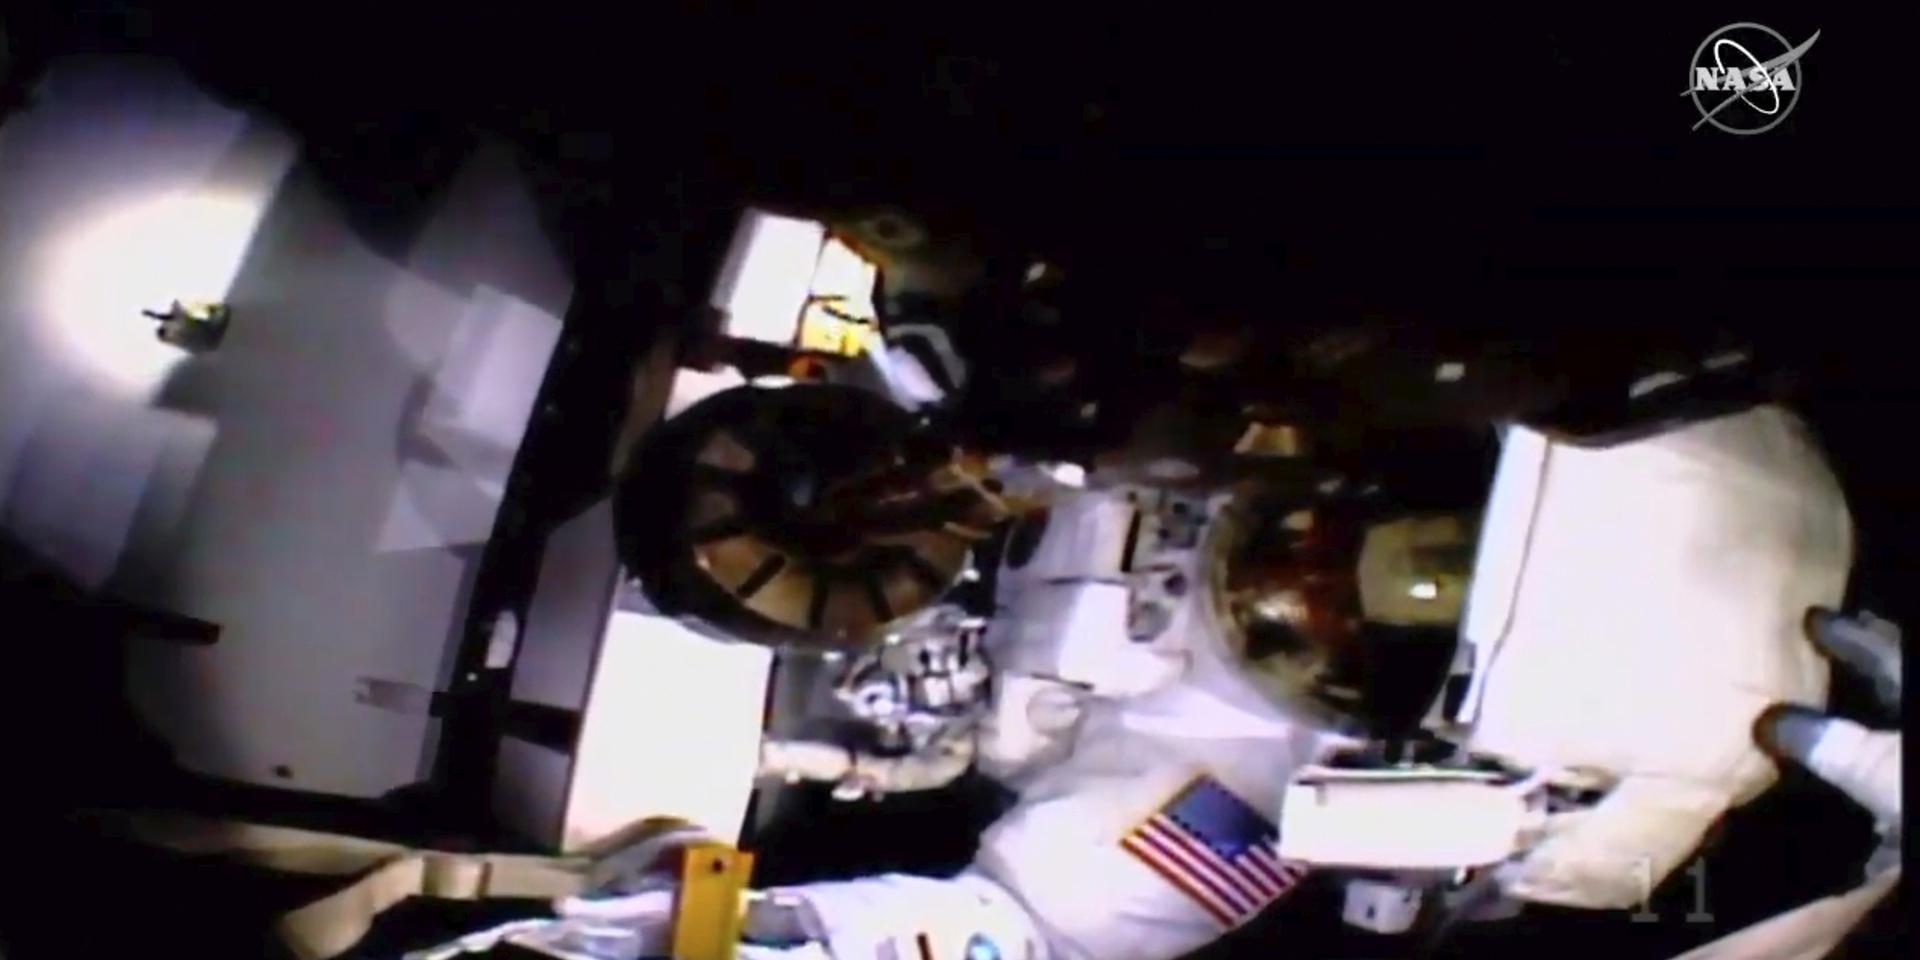 Här hjälps astronauterna år sedan videokameran och ljuset på Christina Kochs hjälm lossnat. Jessica Meirs handske syns till höger vid hjälmen.